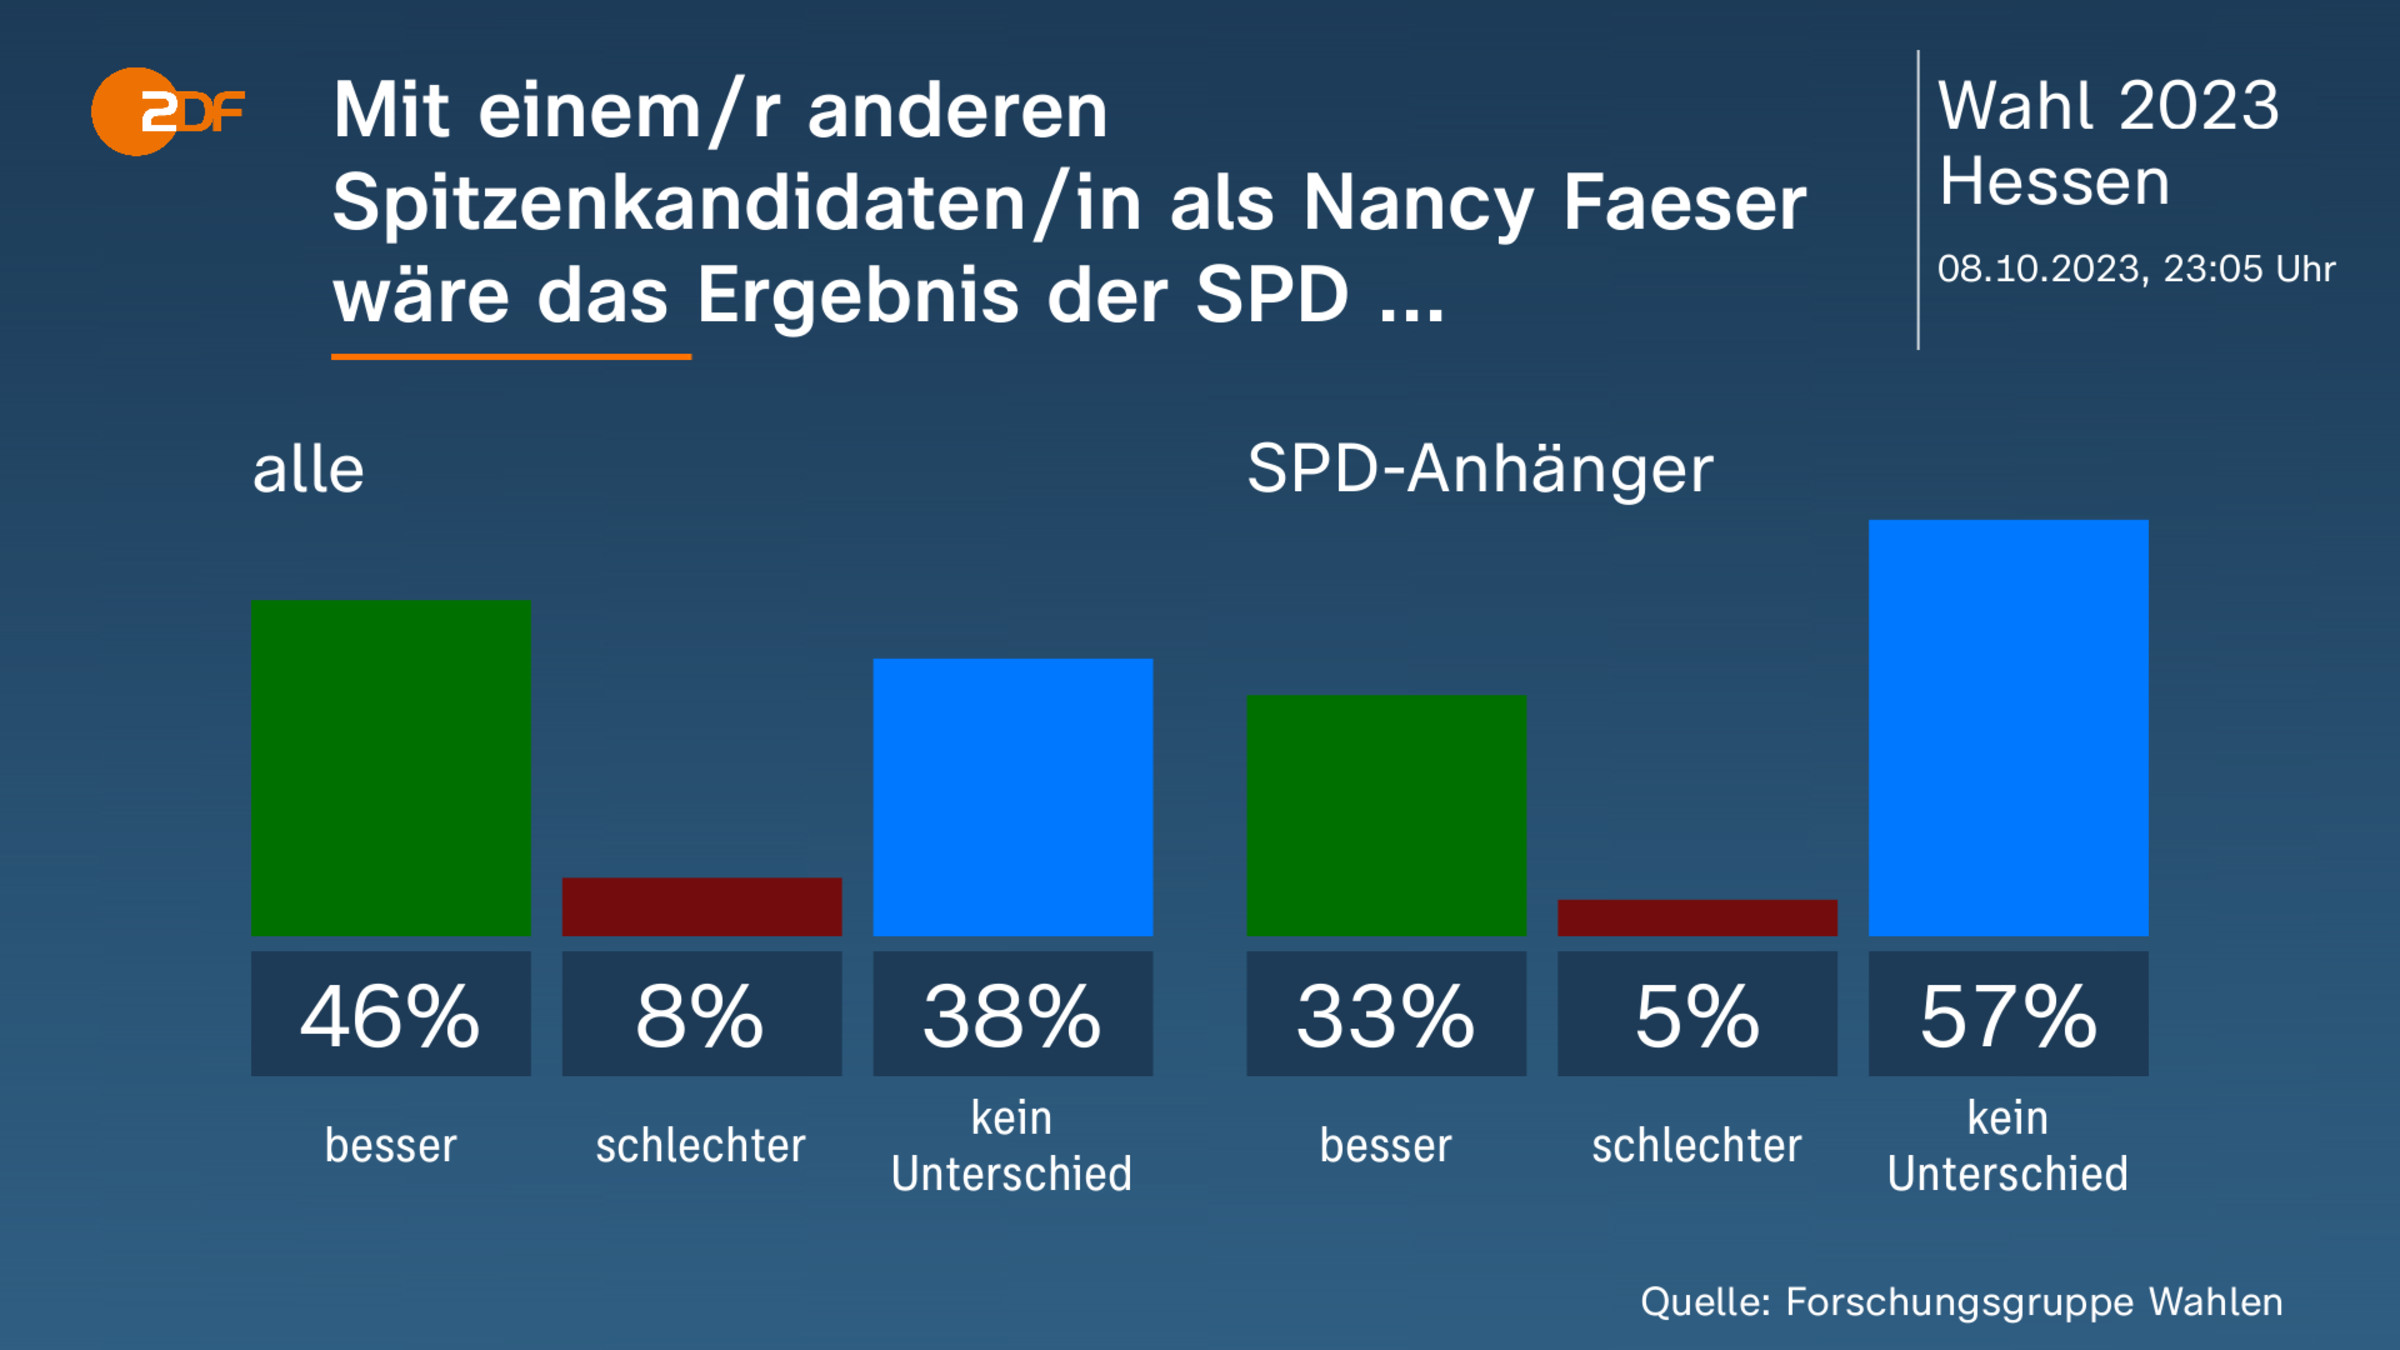 Mit einem/r anderen Spitzenkandidaten/in als Nancy Faeser wäre das Ergebnis der SPD ...